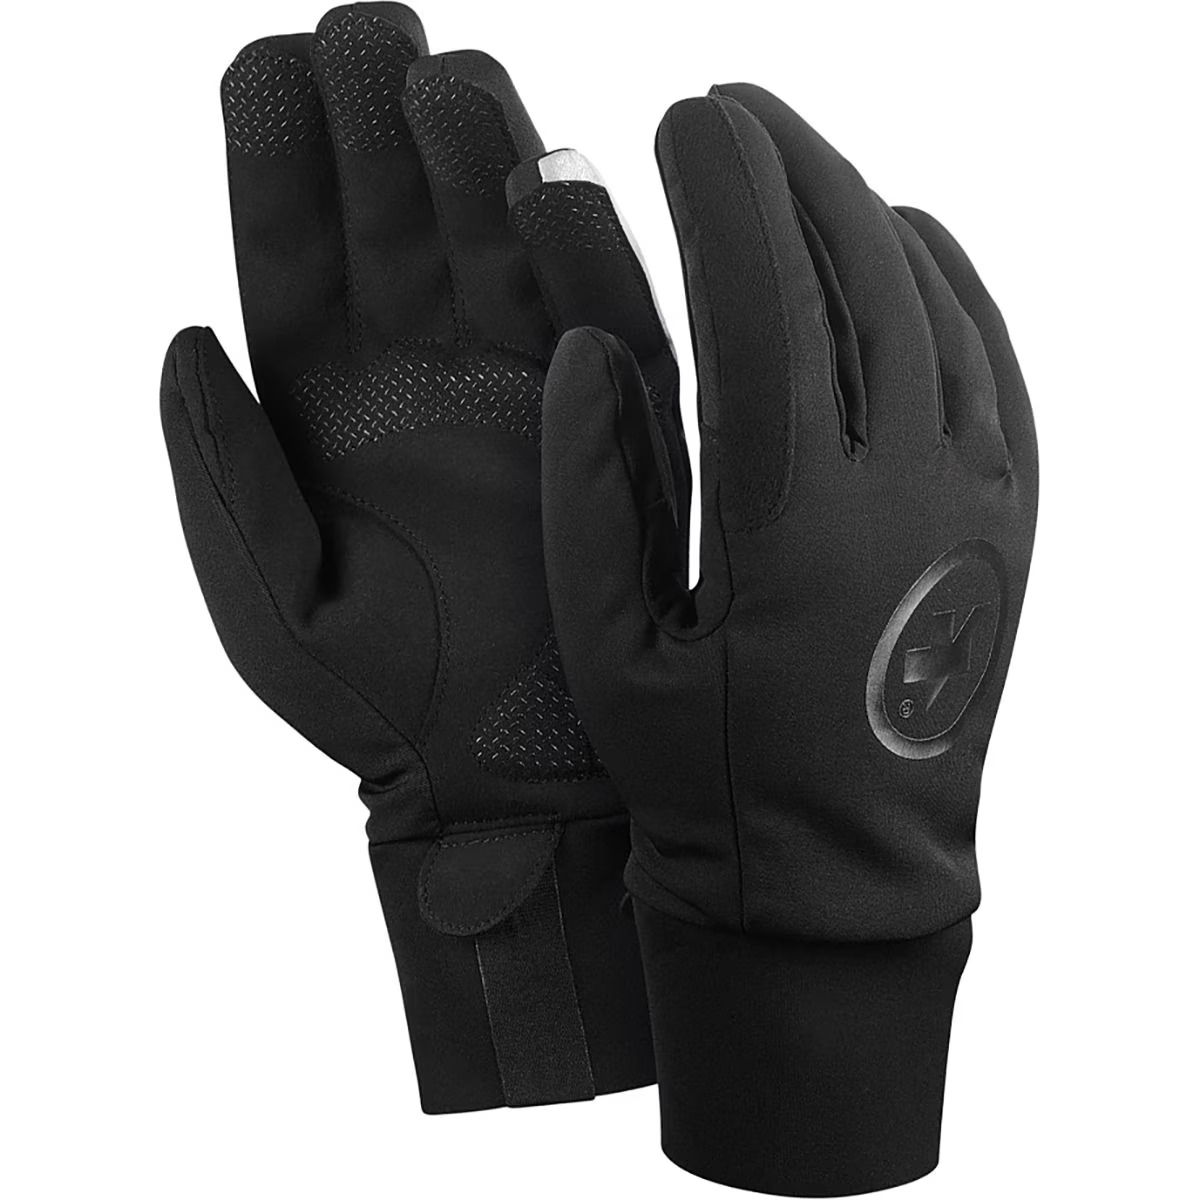 Assos Ultraz Winter Glove